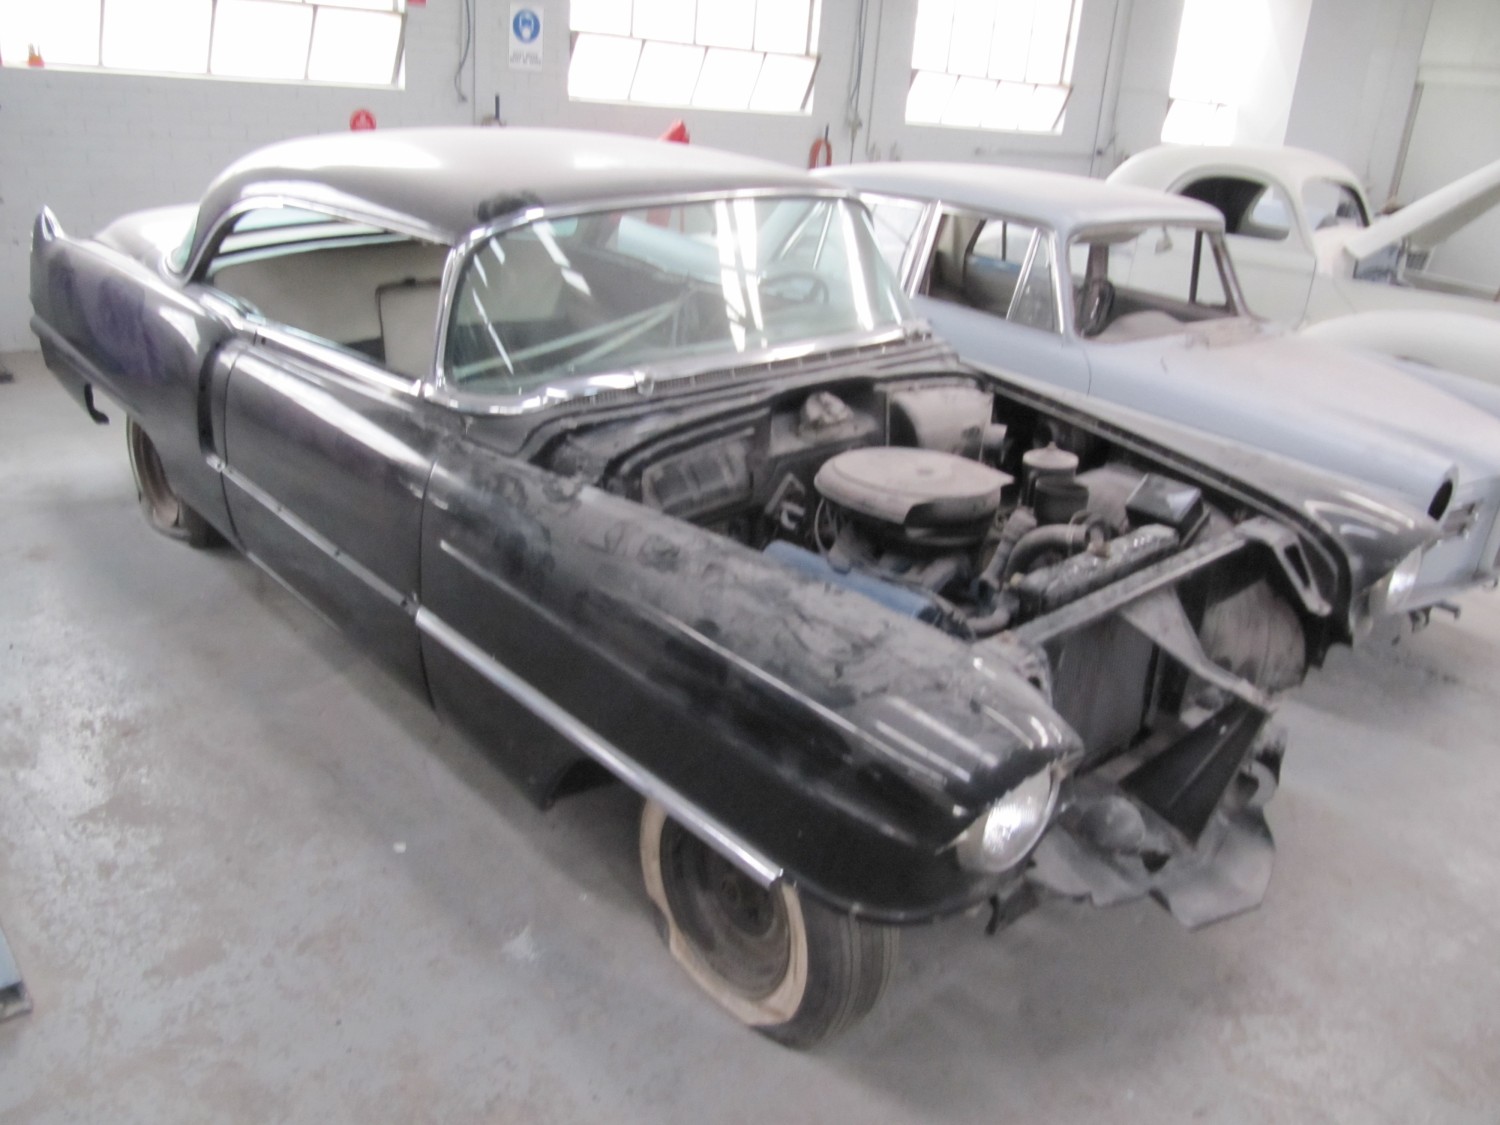 1956 Cadillac coupe de ville